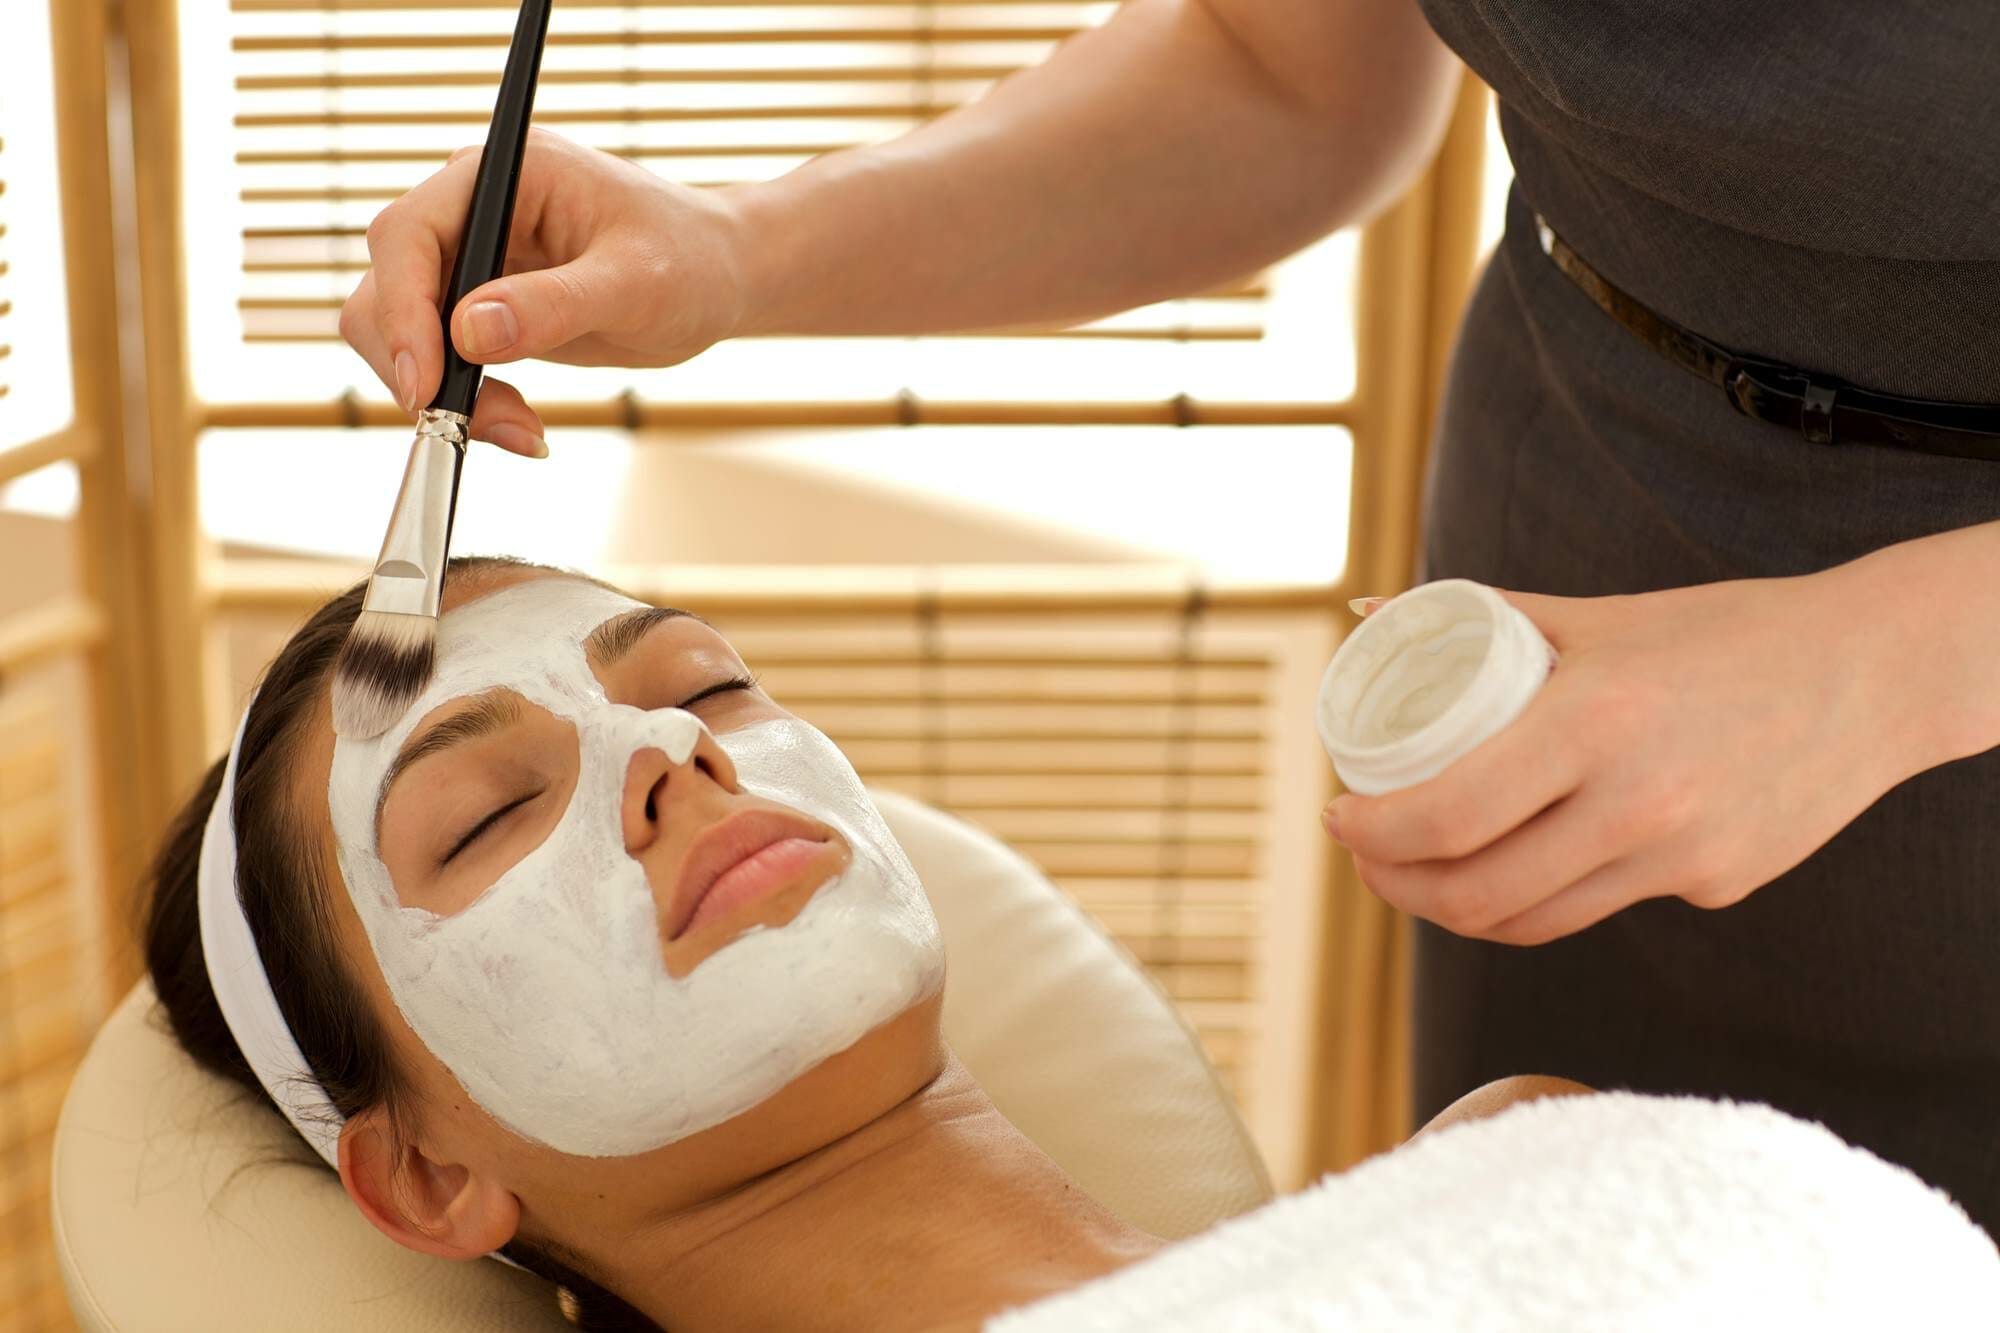 Acne Treatments: Medical Procedures May Help Clear Skin - Merritt Island FL